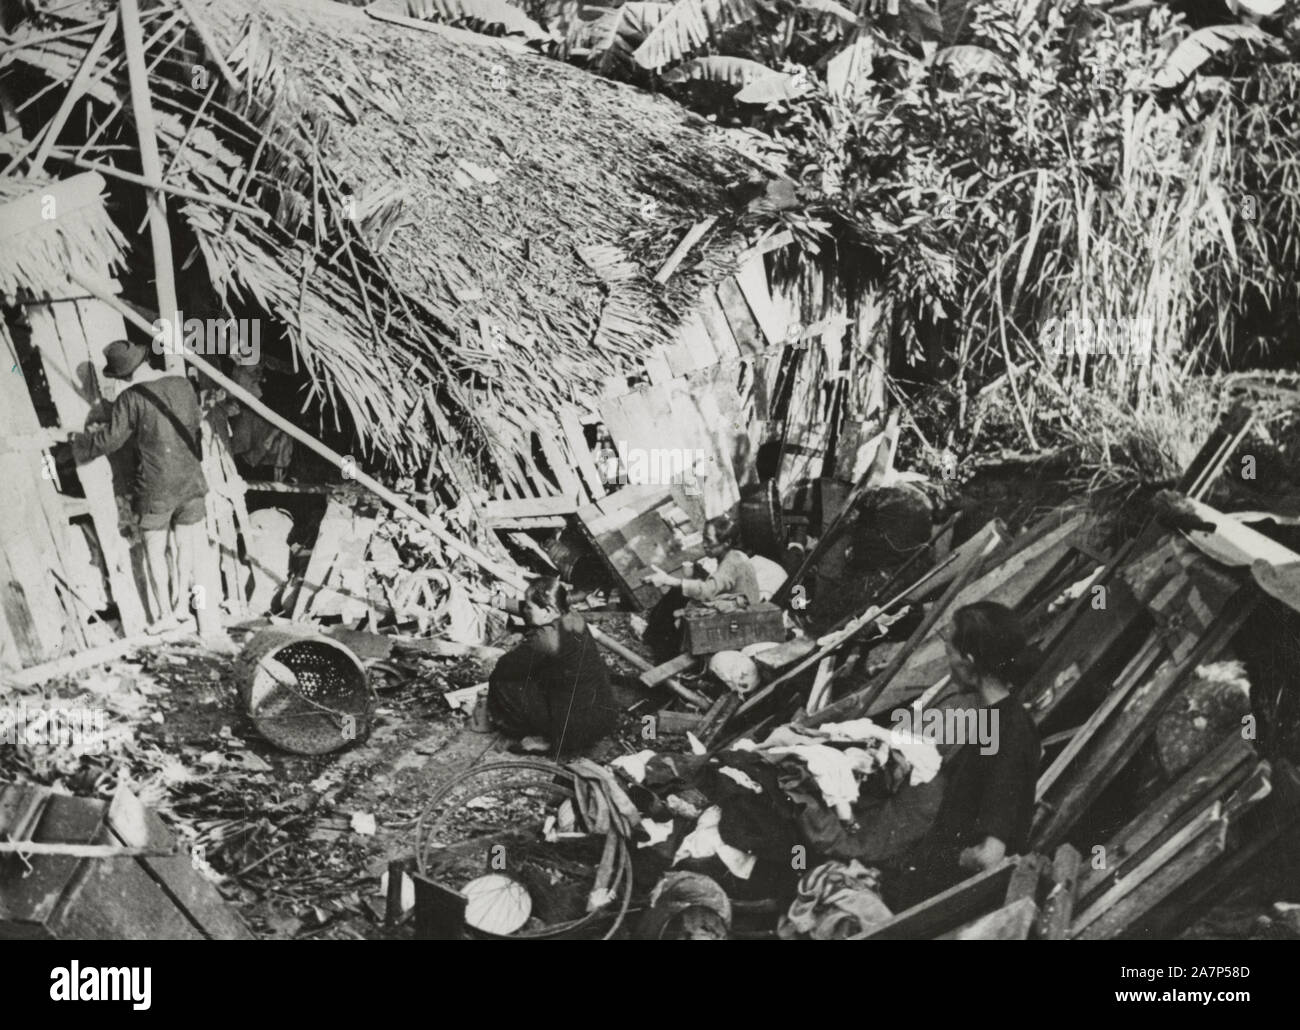 Ein Malay Chinese die Errichtung einer temporären Schutz inmitten der Ruinen von seinem Haus von japanischen Räuber bombardiert, während seine Frau (rechts) ihre verstreuten Besitzungen sammelt. Februar 1942 Stockfoto